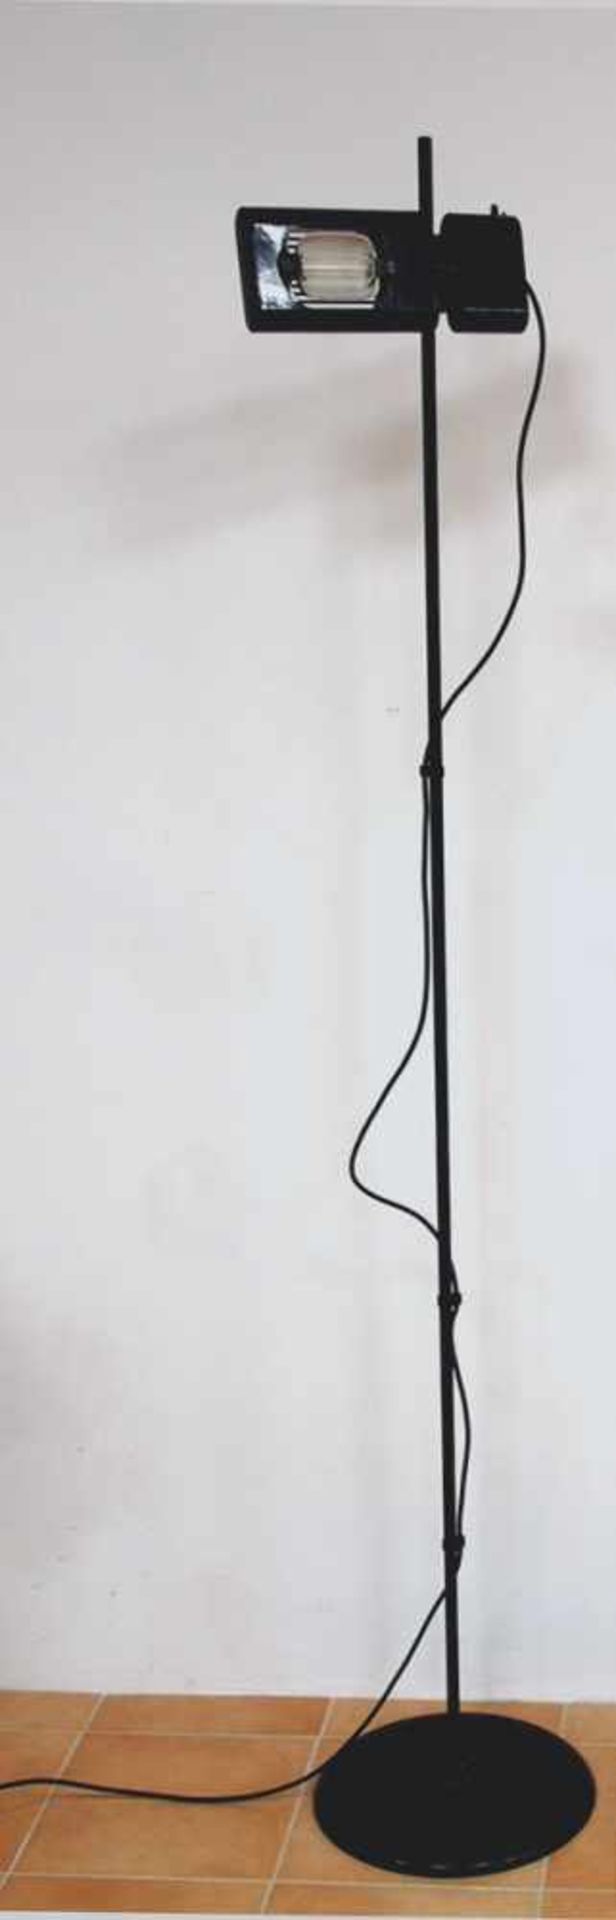 Stehlampe Aton terraEntwurf Ernesto Gismondi, Druckgussaluminium, schwarz lackiert, Höhe 190 cm,